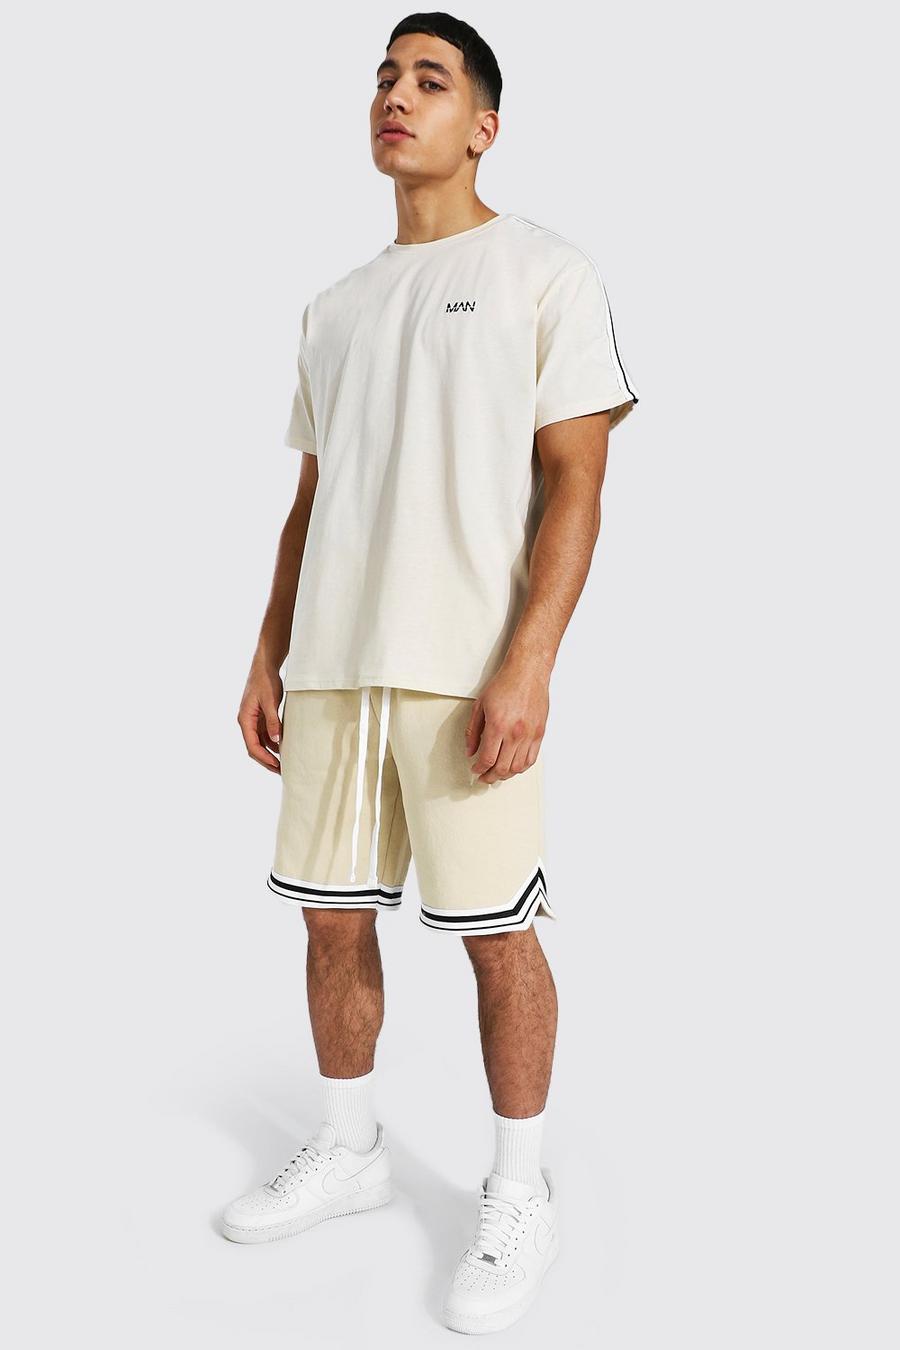 Pantalones cortos de baloncesto y camiseta con cinta Original MAN, Arena image number 1